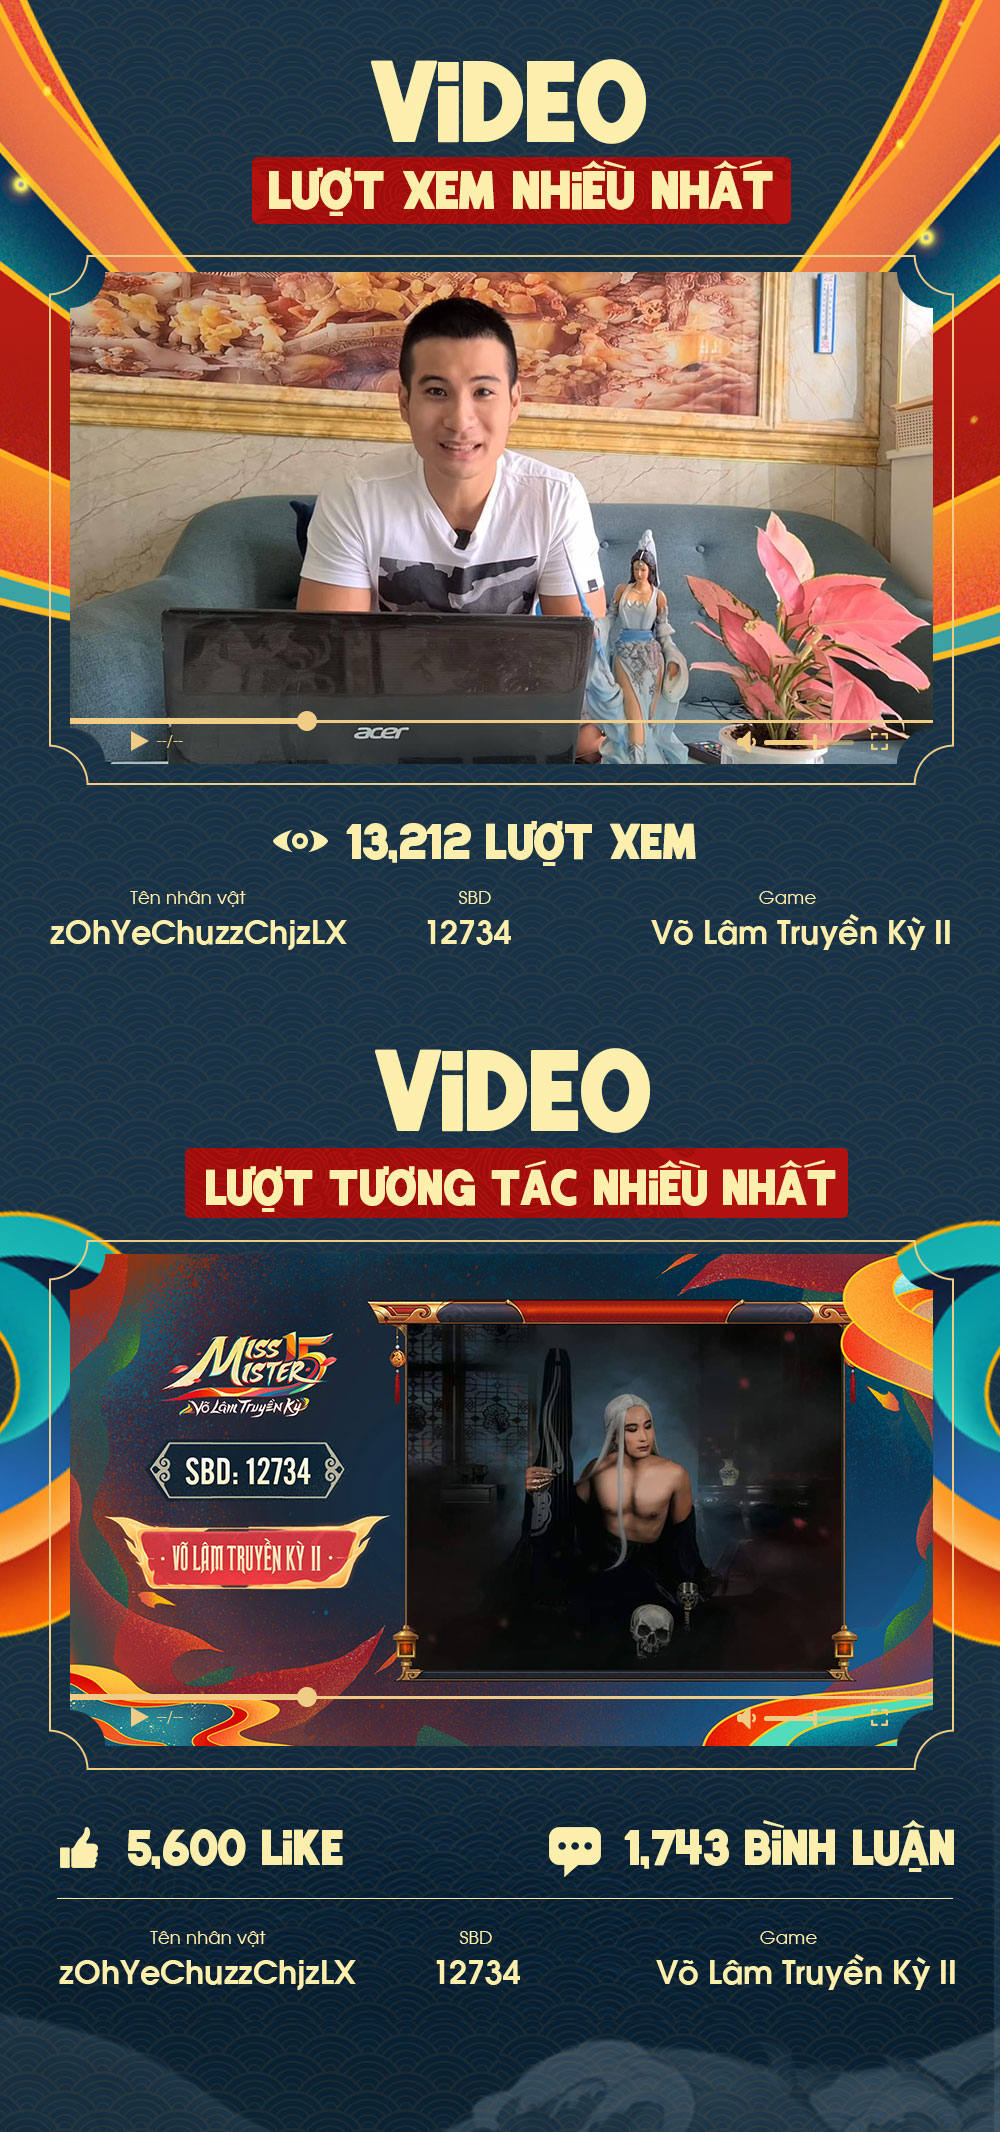 Miss & Mister VLTK 15: Hơn 9 triệu Hoa Hồng được trao gửi và gần 100,000 lượt tương tác trên kênh Youtube